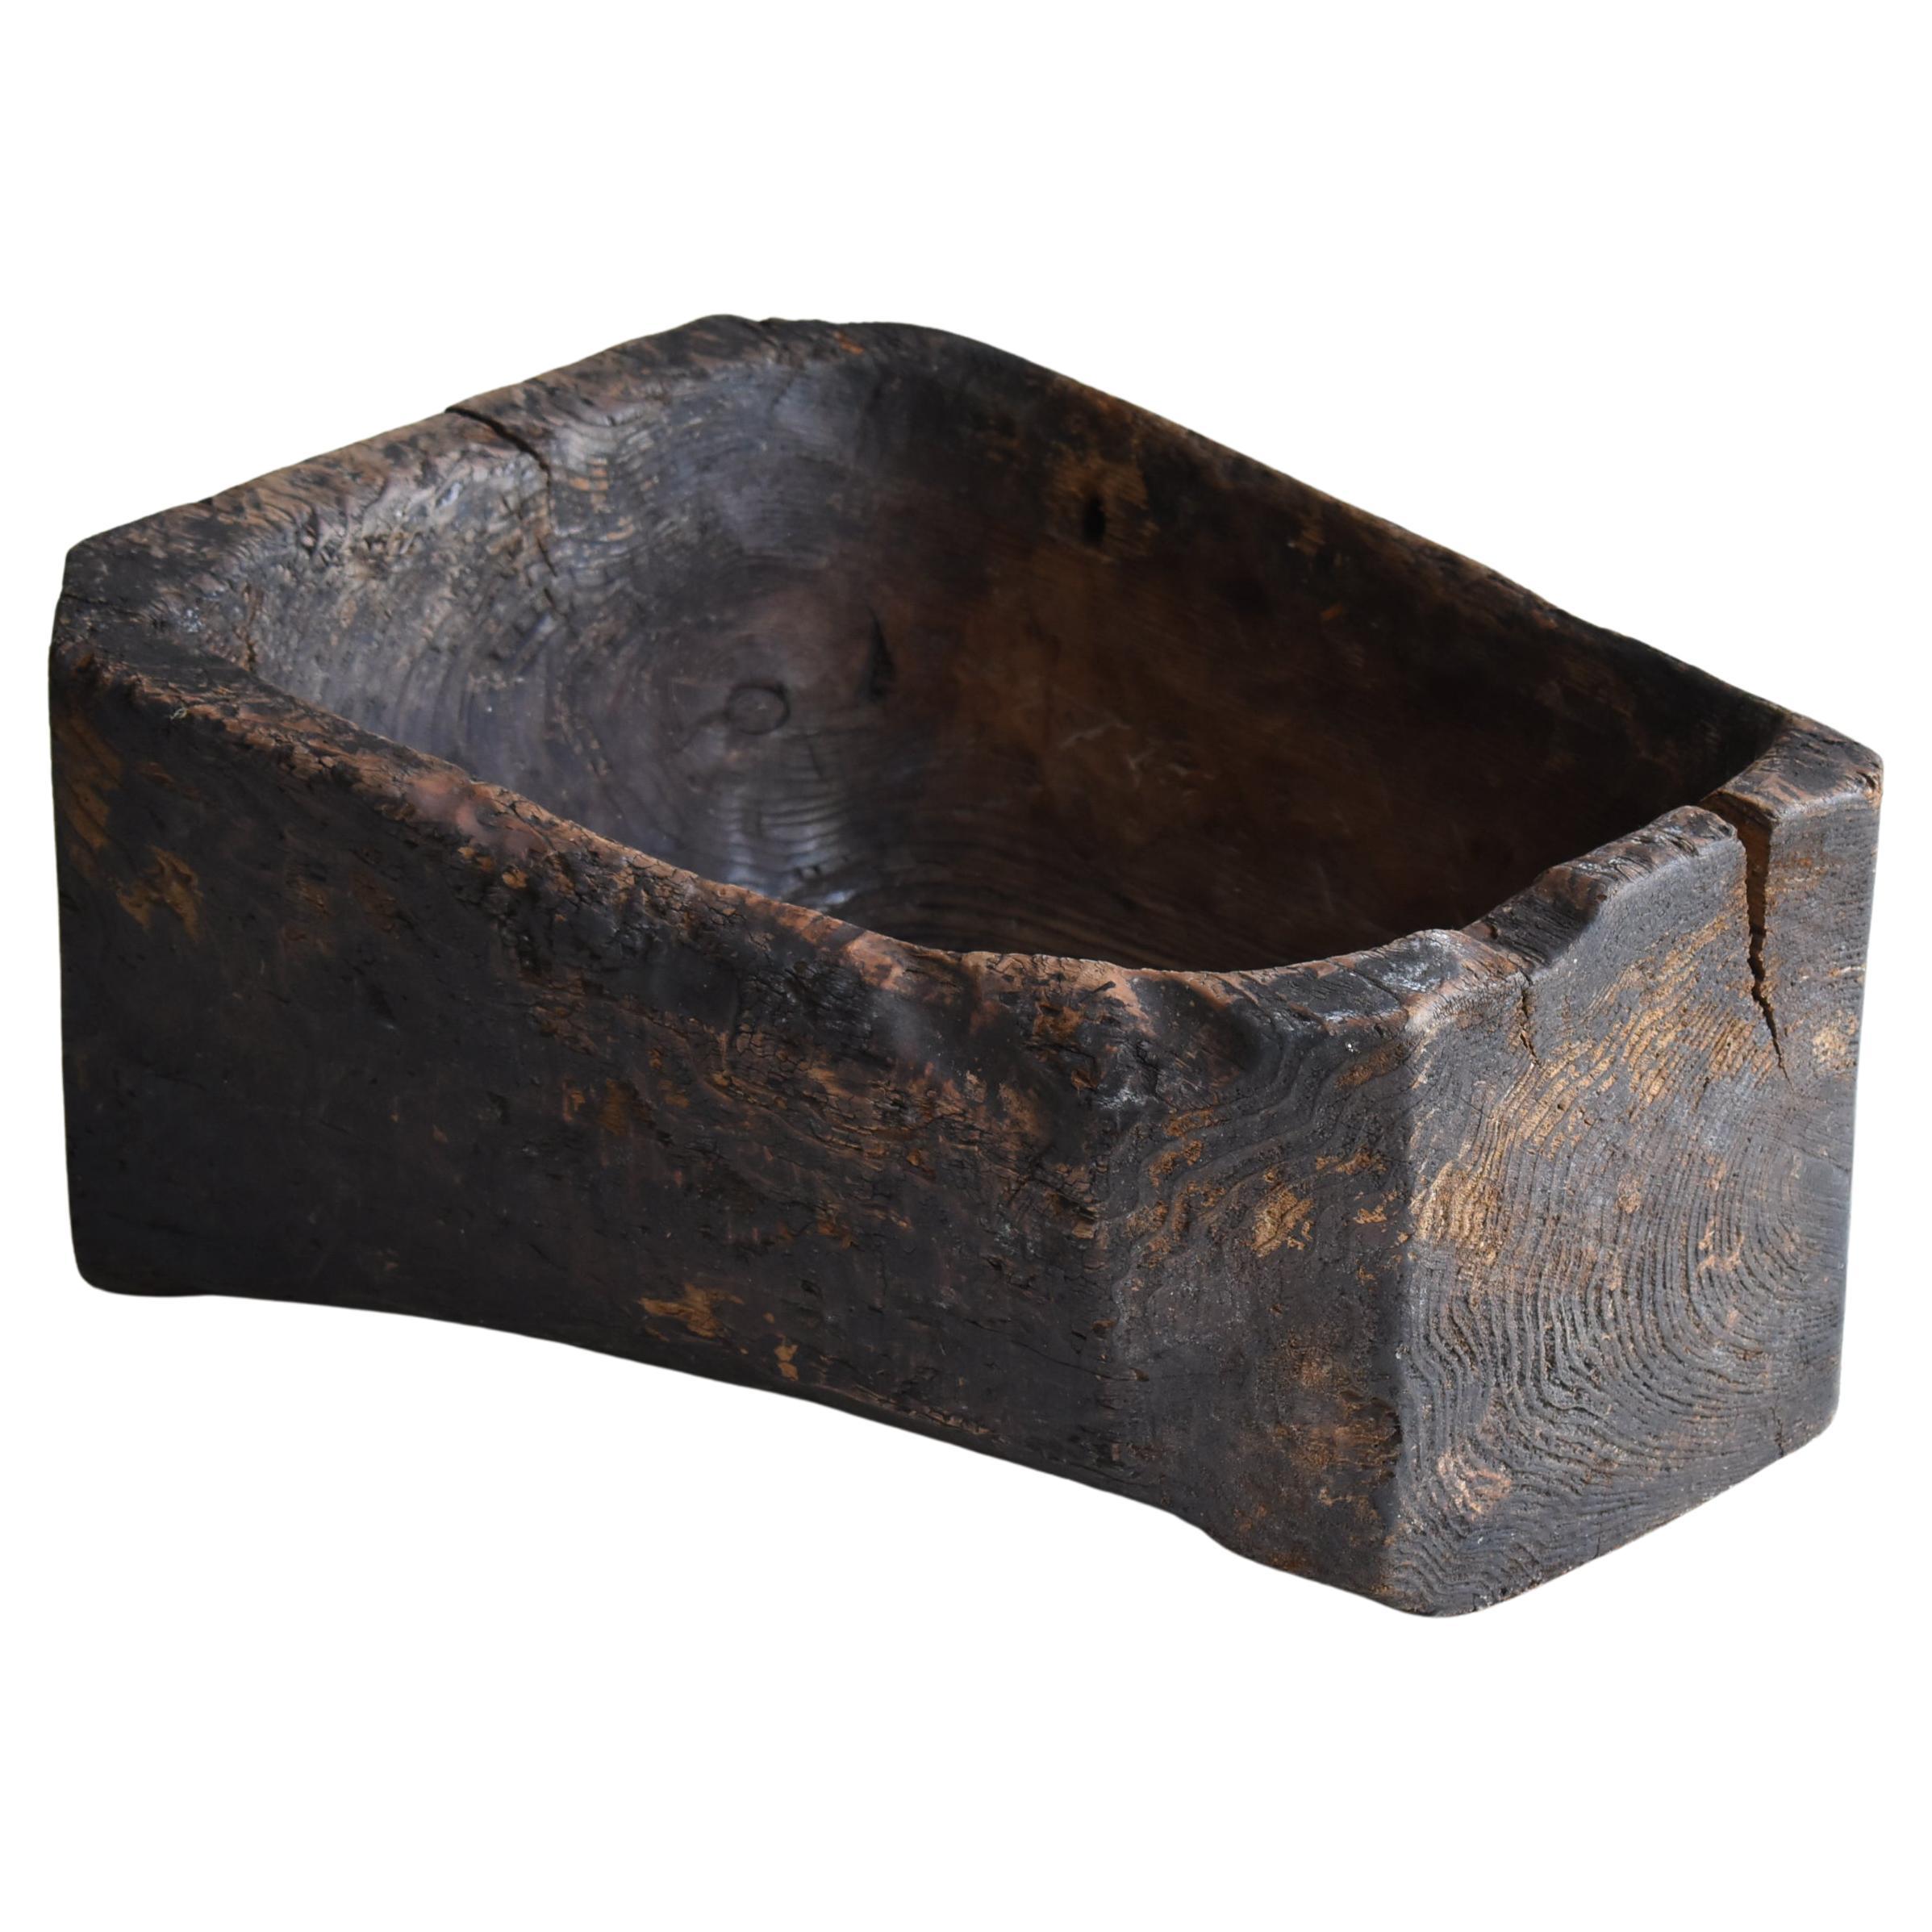 Japanese Antique Primitive Wooden Bowl 1860s-1900s / Wabi Sabi Object Mingei